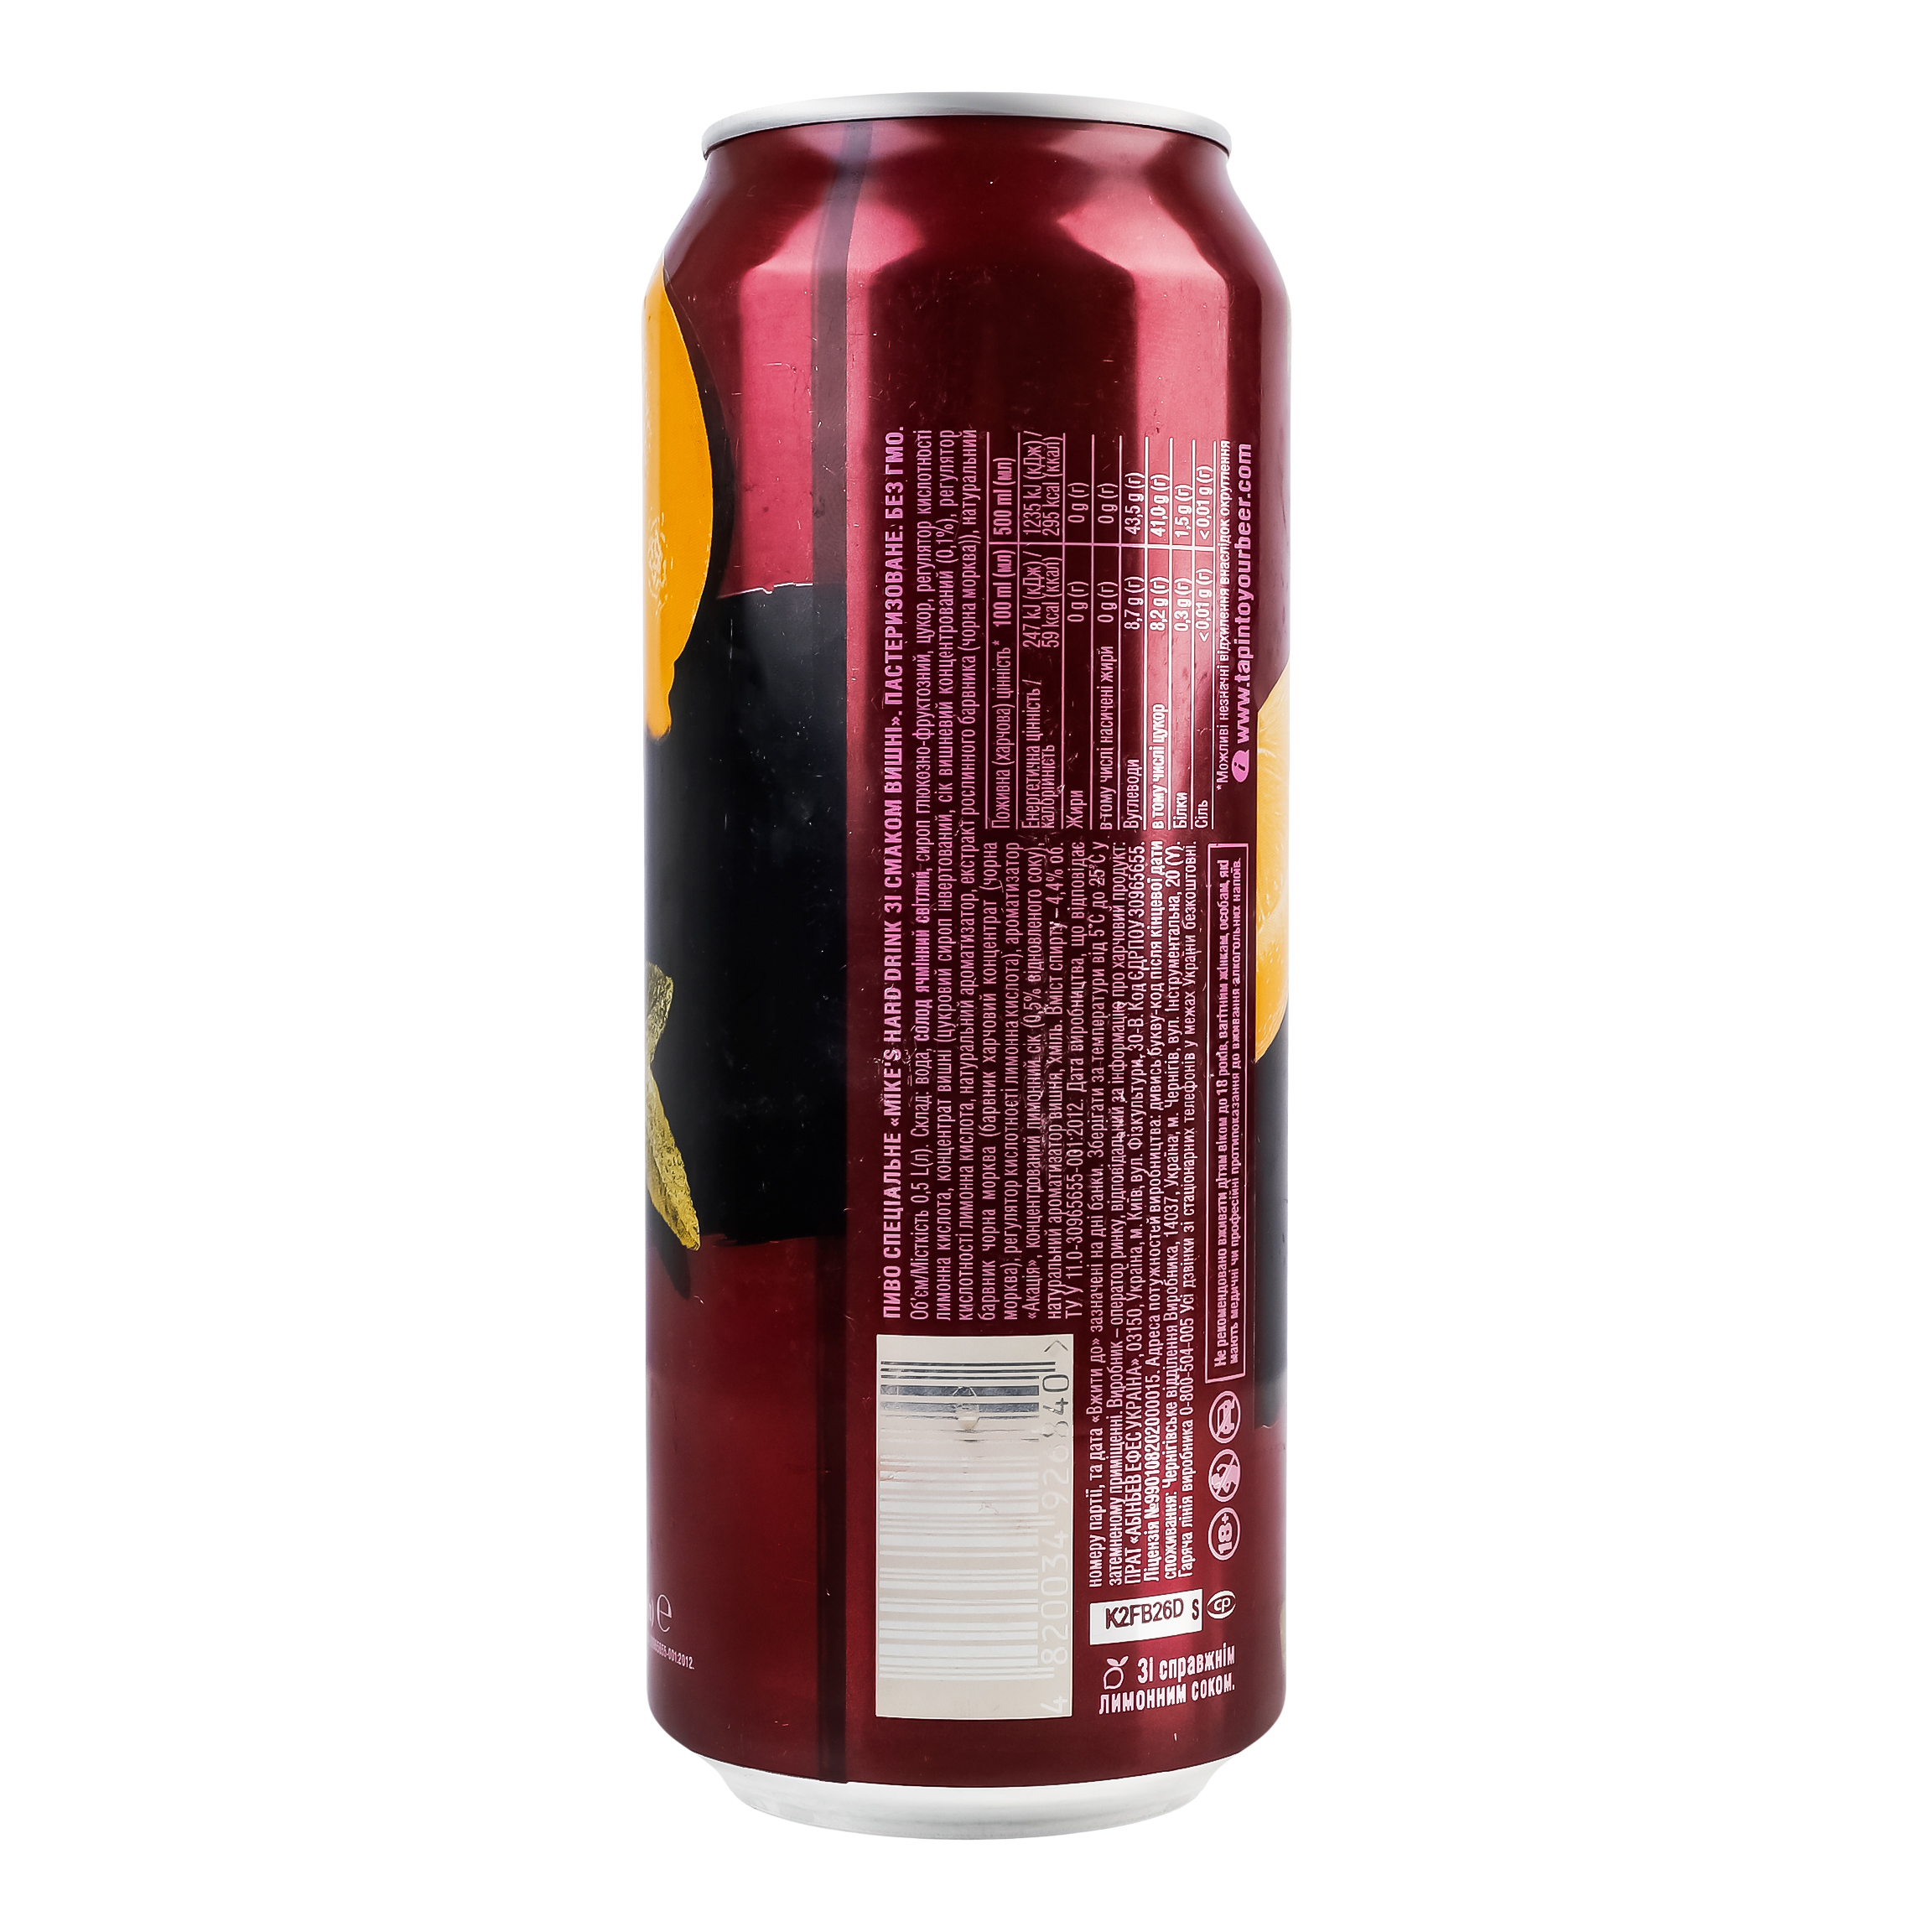 Пиво Mike's Hard Drink Cherry 4.4% 0.5 л з/б - фото 3